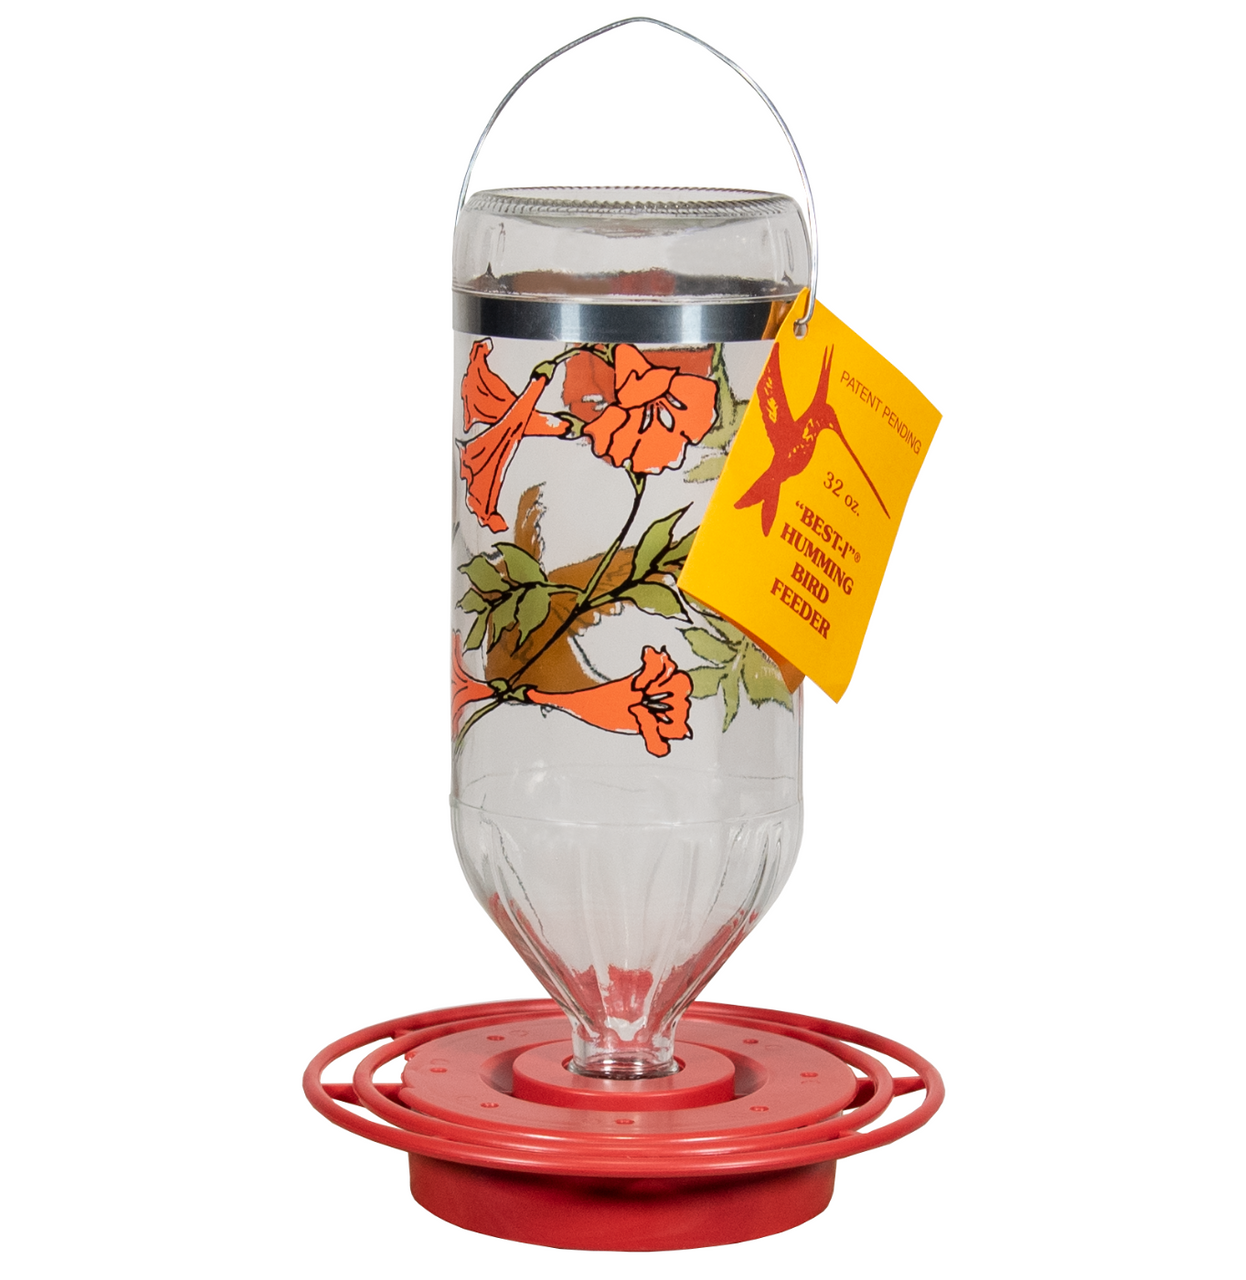 Best-1 Rufous Art Hummingbird Feeder, Glass Bottle, 32 oz (Base and Bottle)